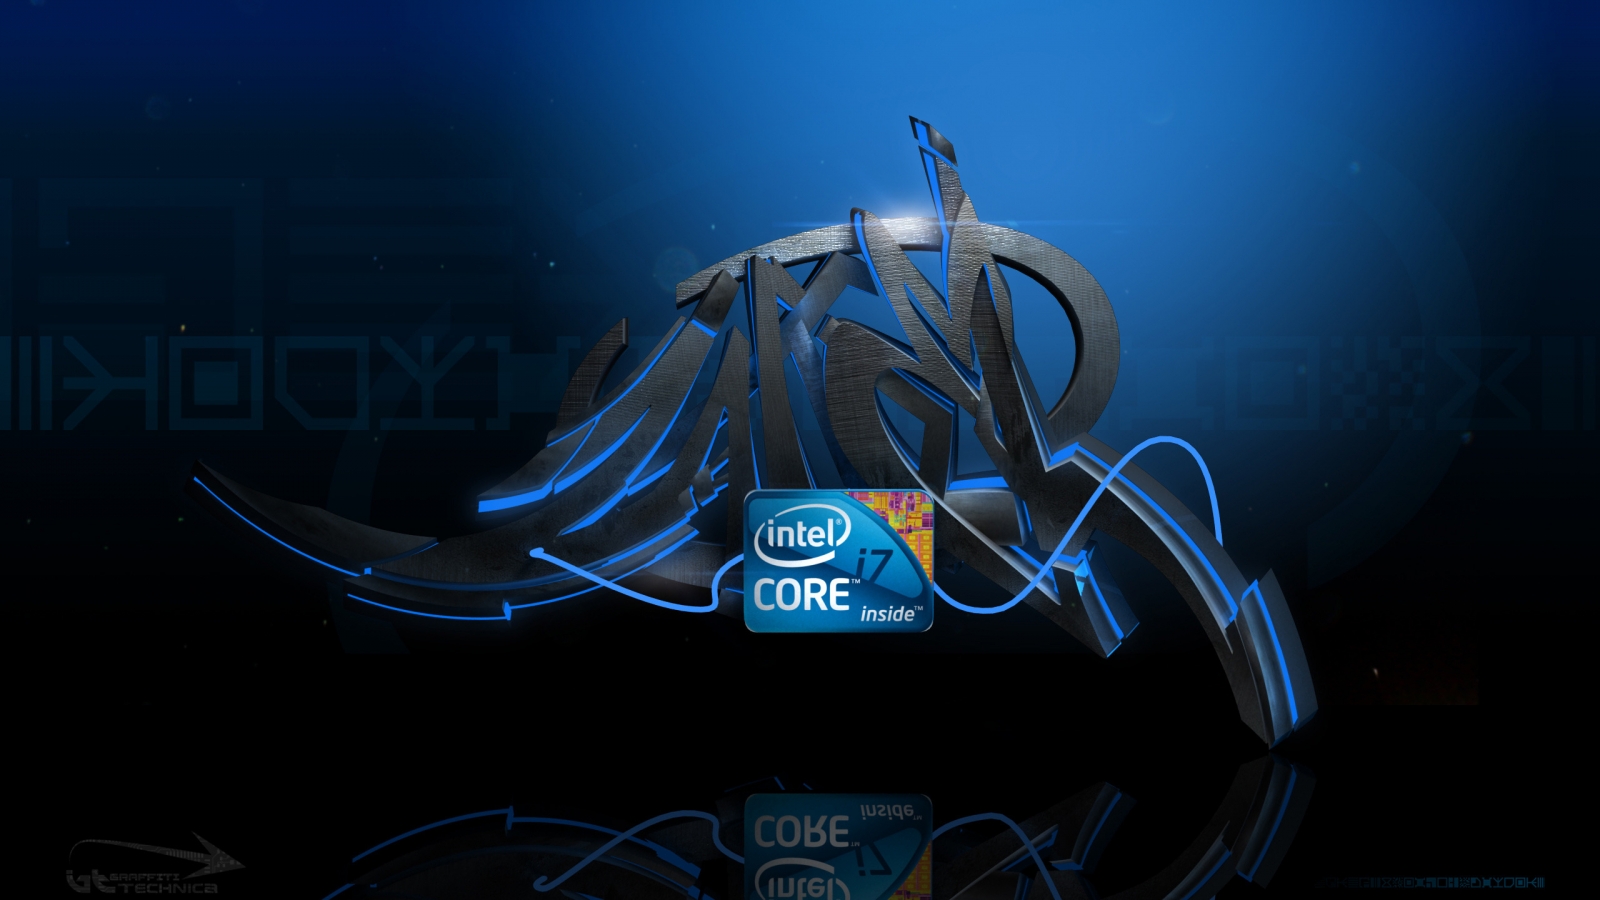 Intel i7 Graffiti for 1600 x 900 HDTV resolution